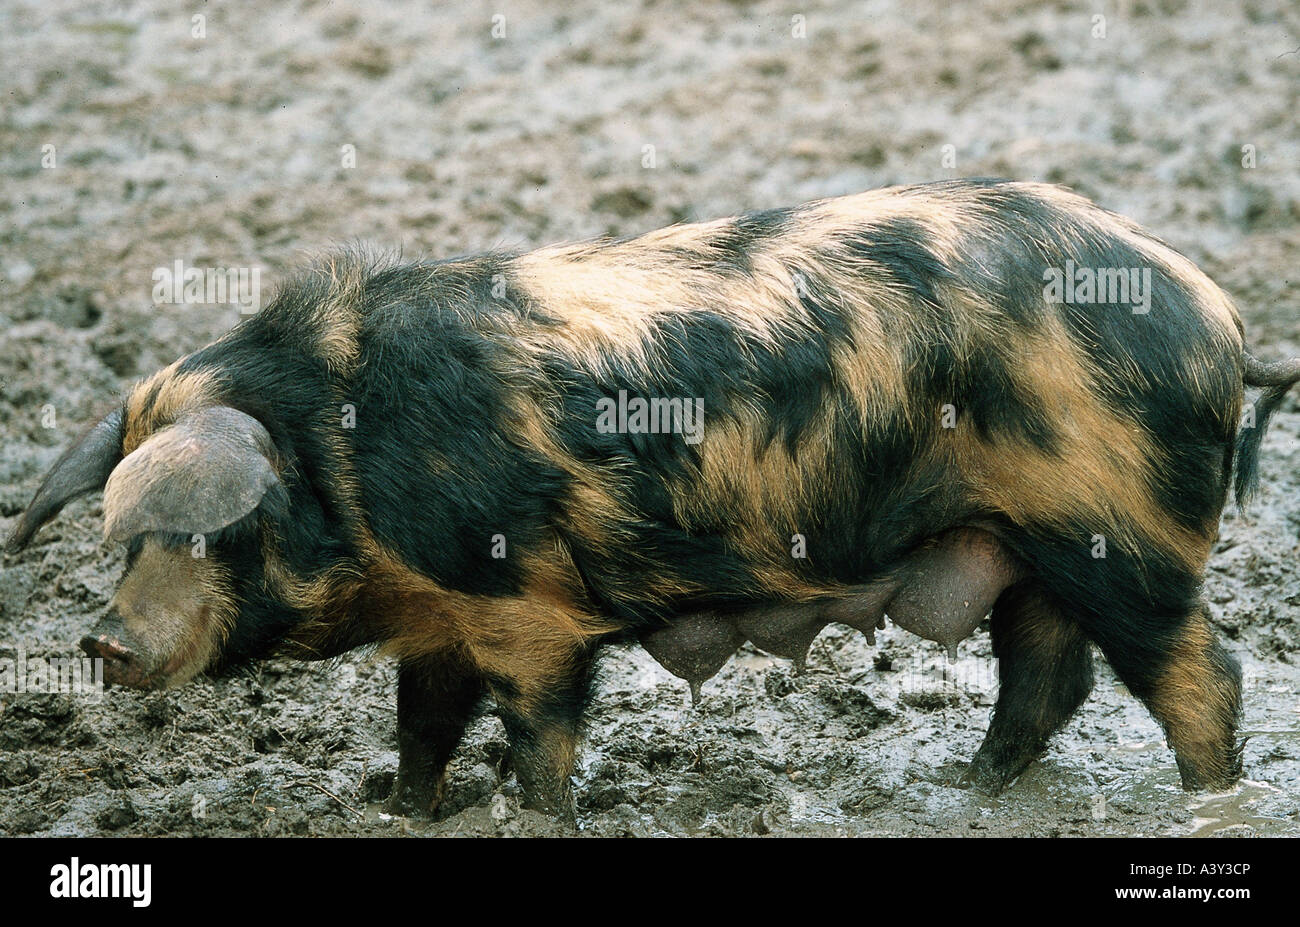 Zoologie / Tiere, Säugetier / Säugetier-, Schweine, Turopoljeschwein, weibliches Schwein, Vertrieb: Kroatien, Slowakei, Hausschwein, sogar Kröte Stockfoto